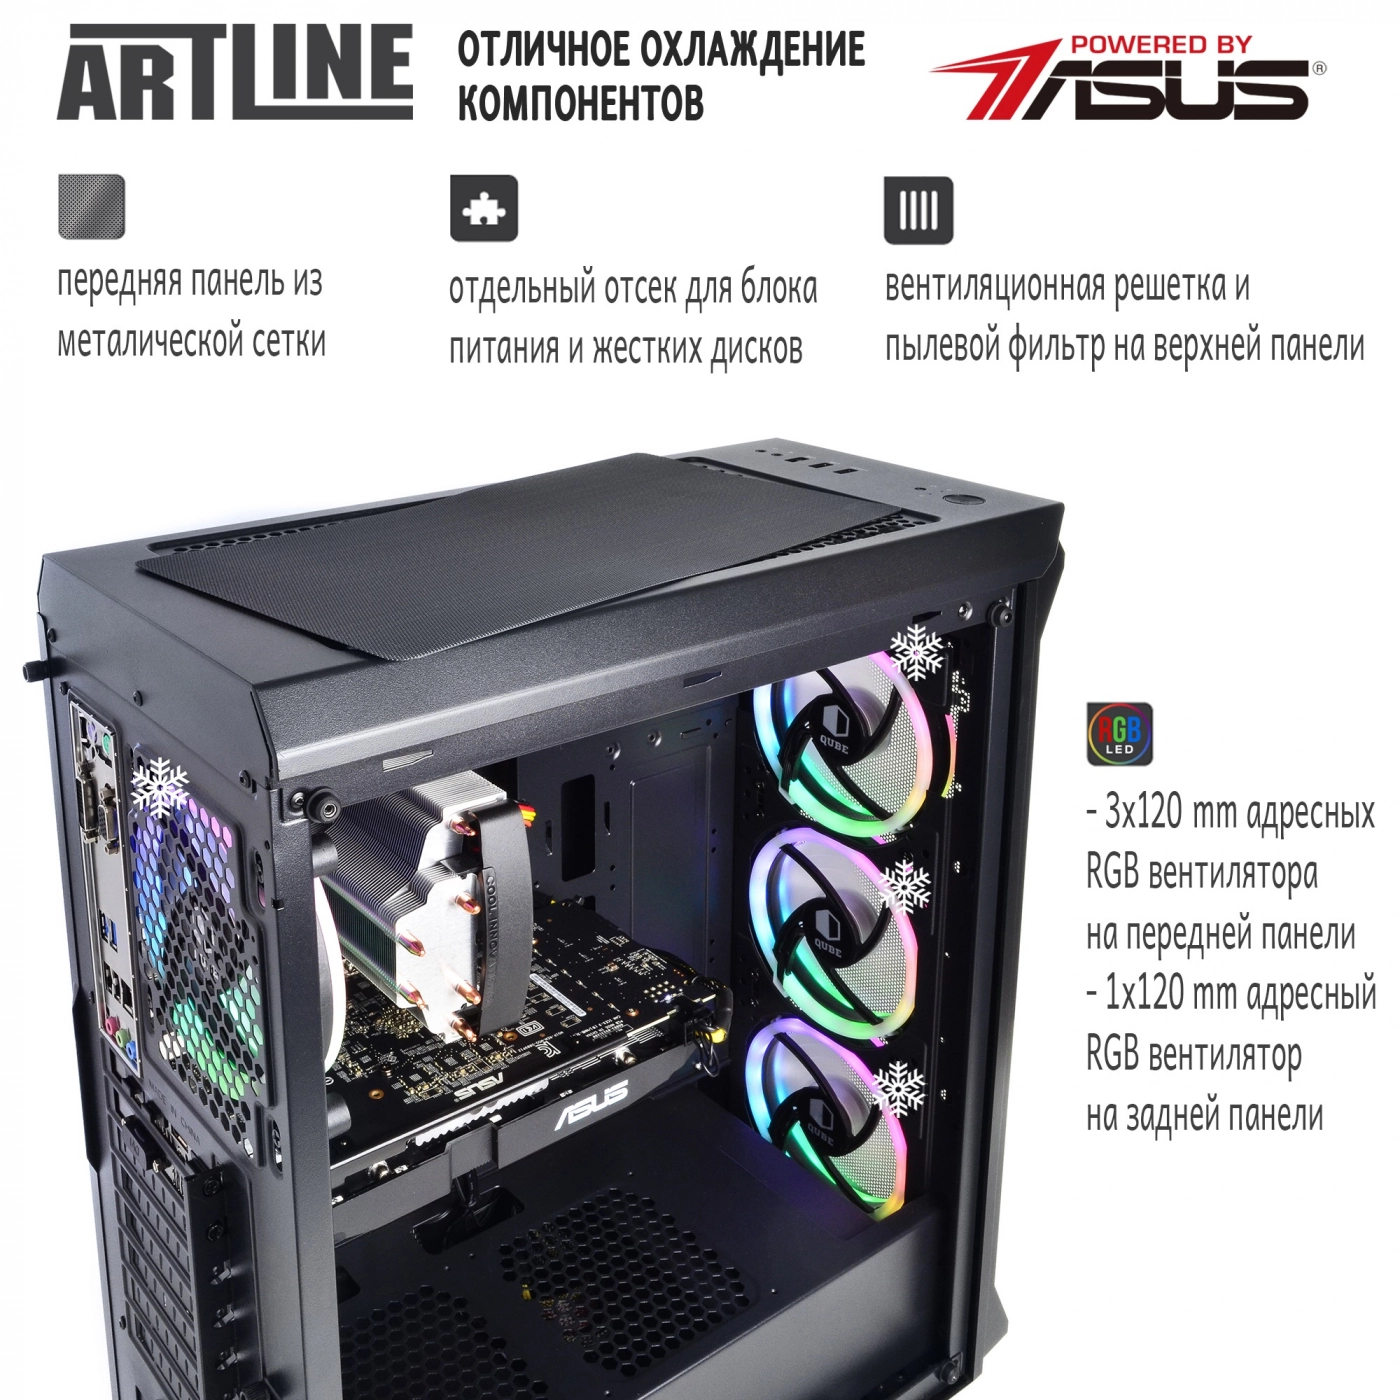 Купить Компьютер ARTLINE Gaming X73v17 - фото 2